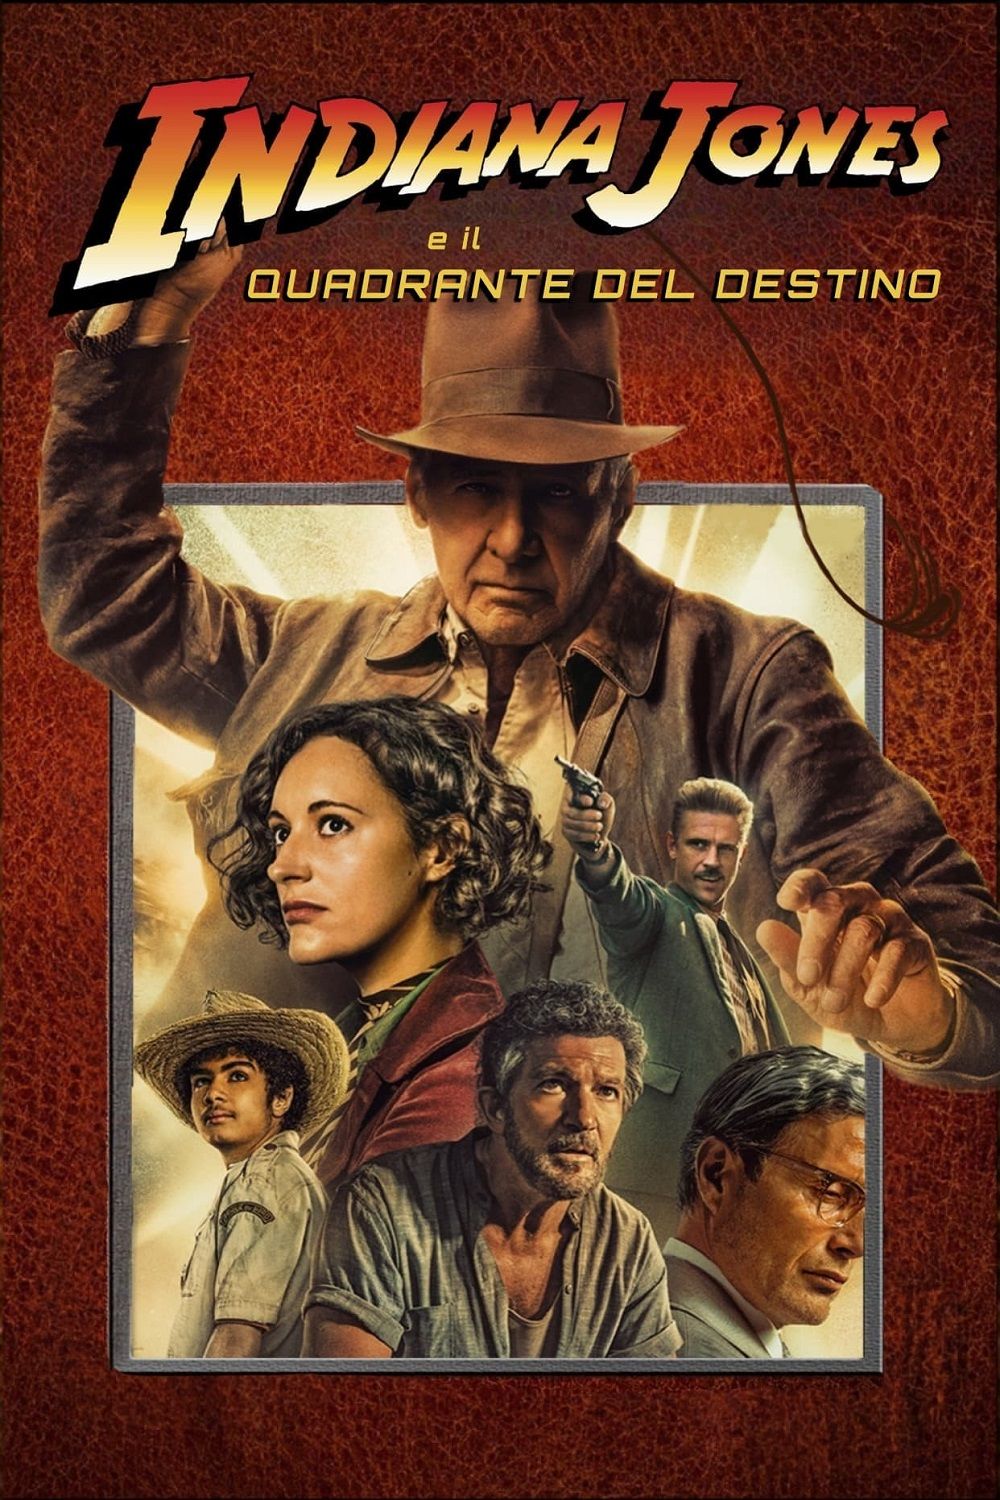 Copertina Film Indiana Jones 5: il quadrante del destino Streaming FULL HD 